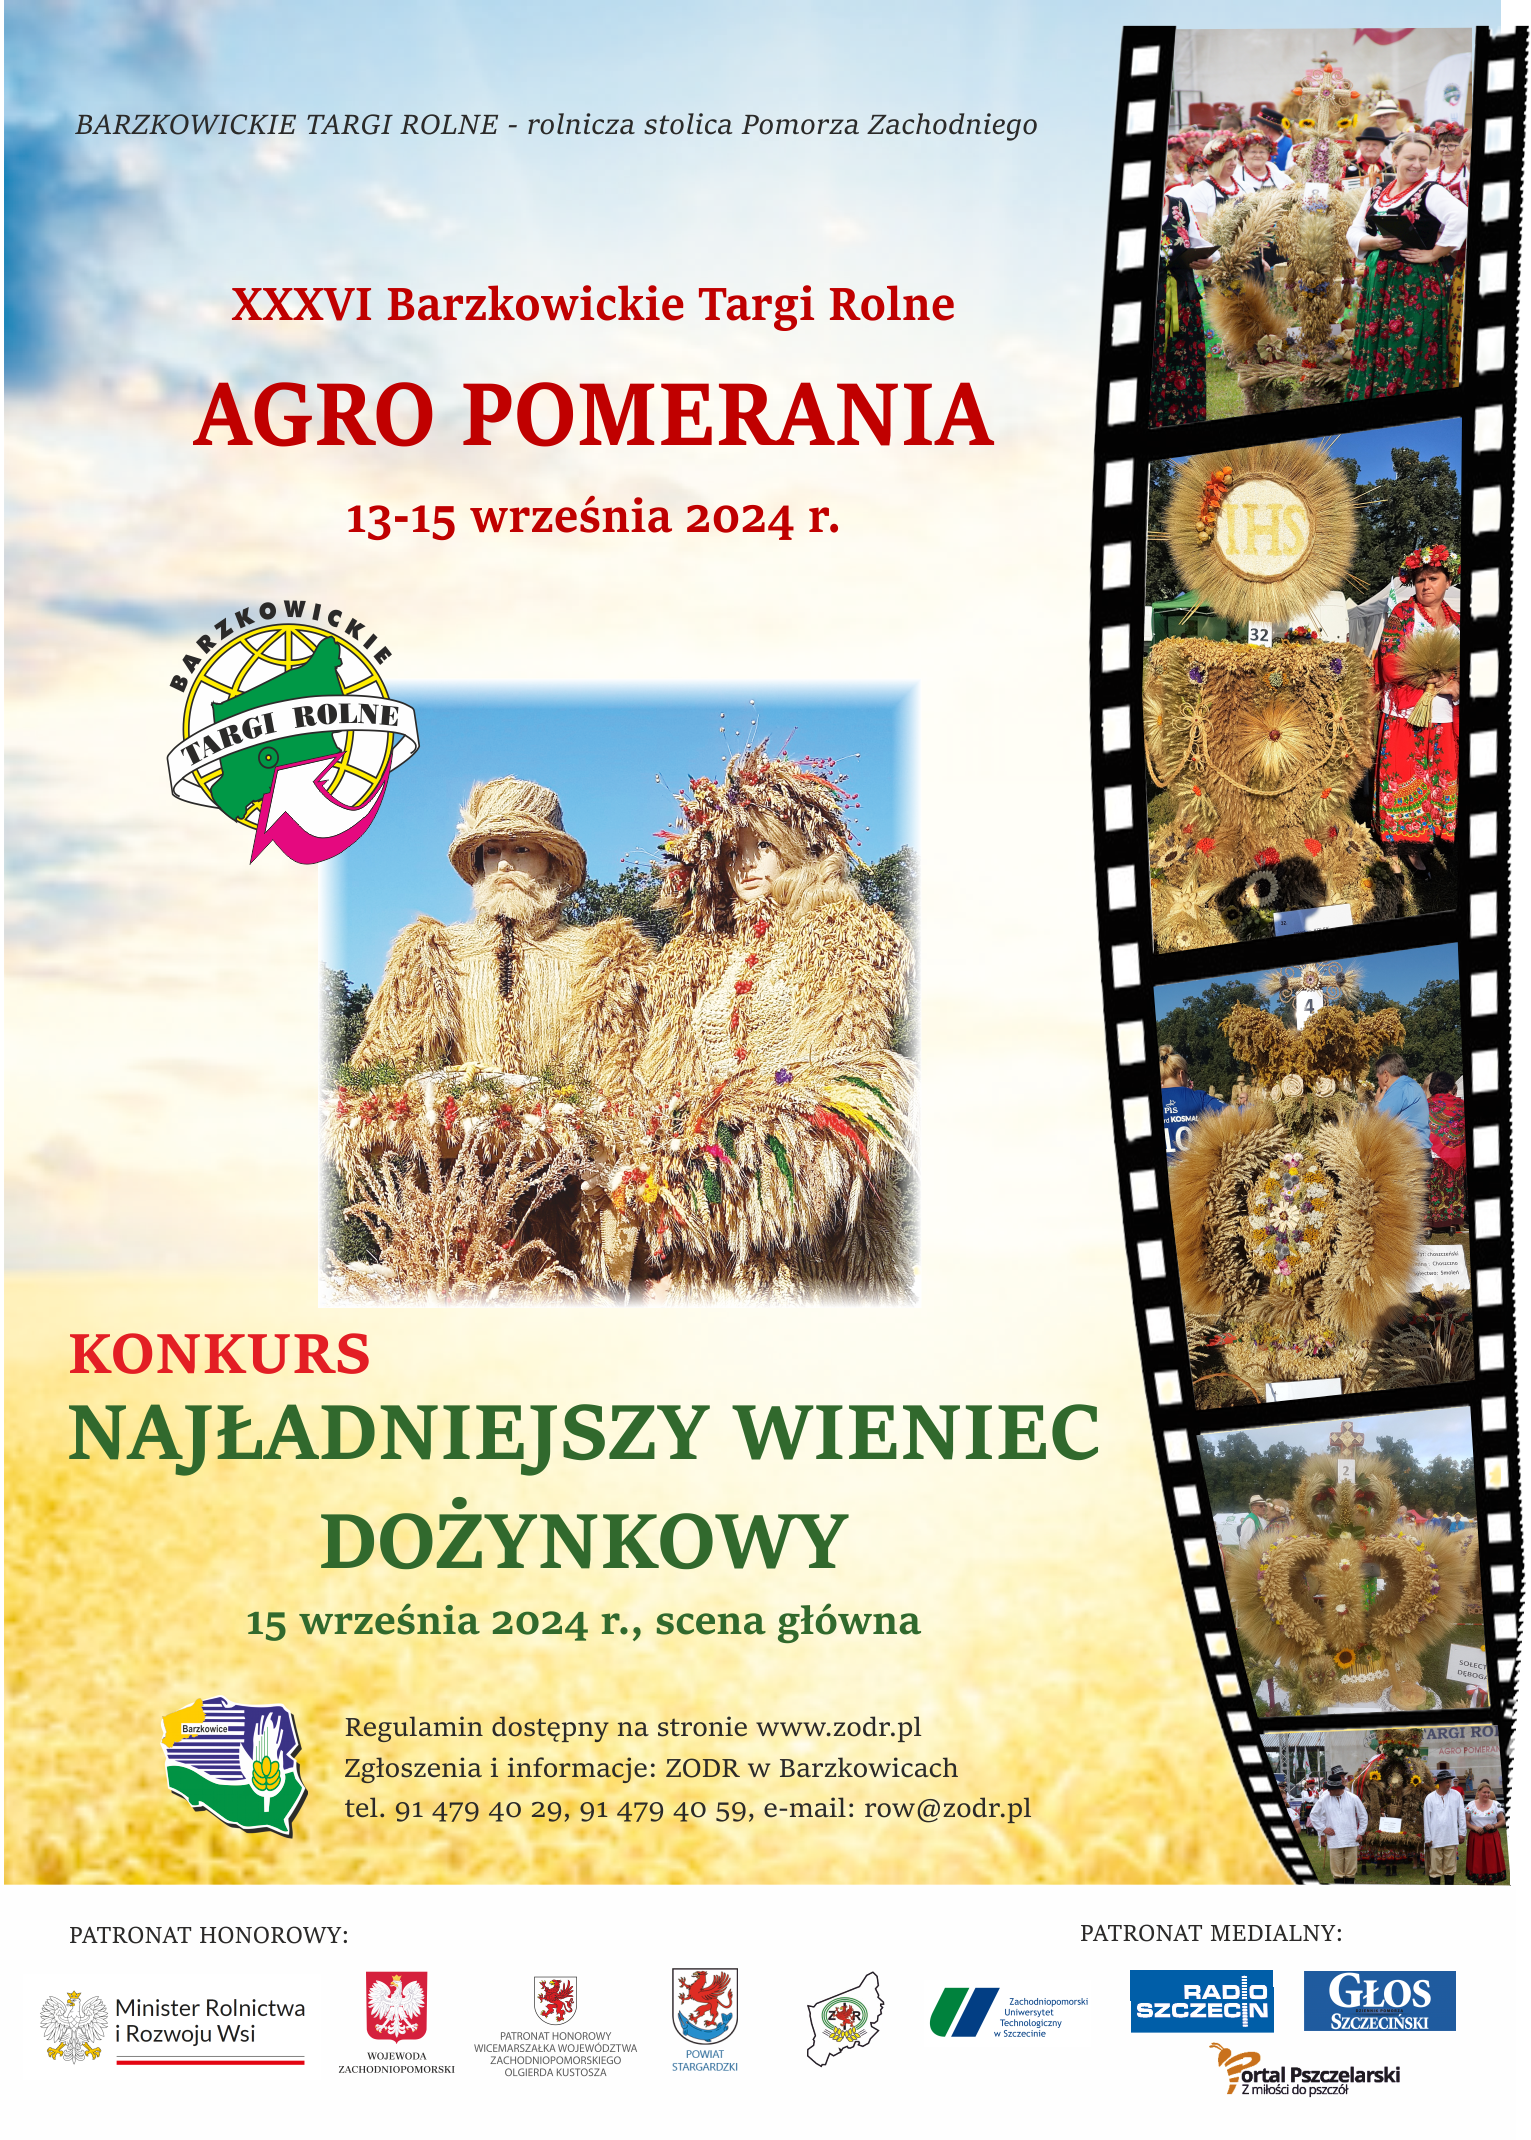 Plakat wydarzenia, które odbędzie się w dniach 13-15 września w Barzkowicach